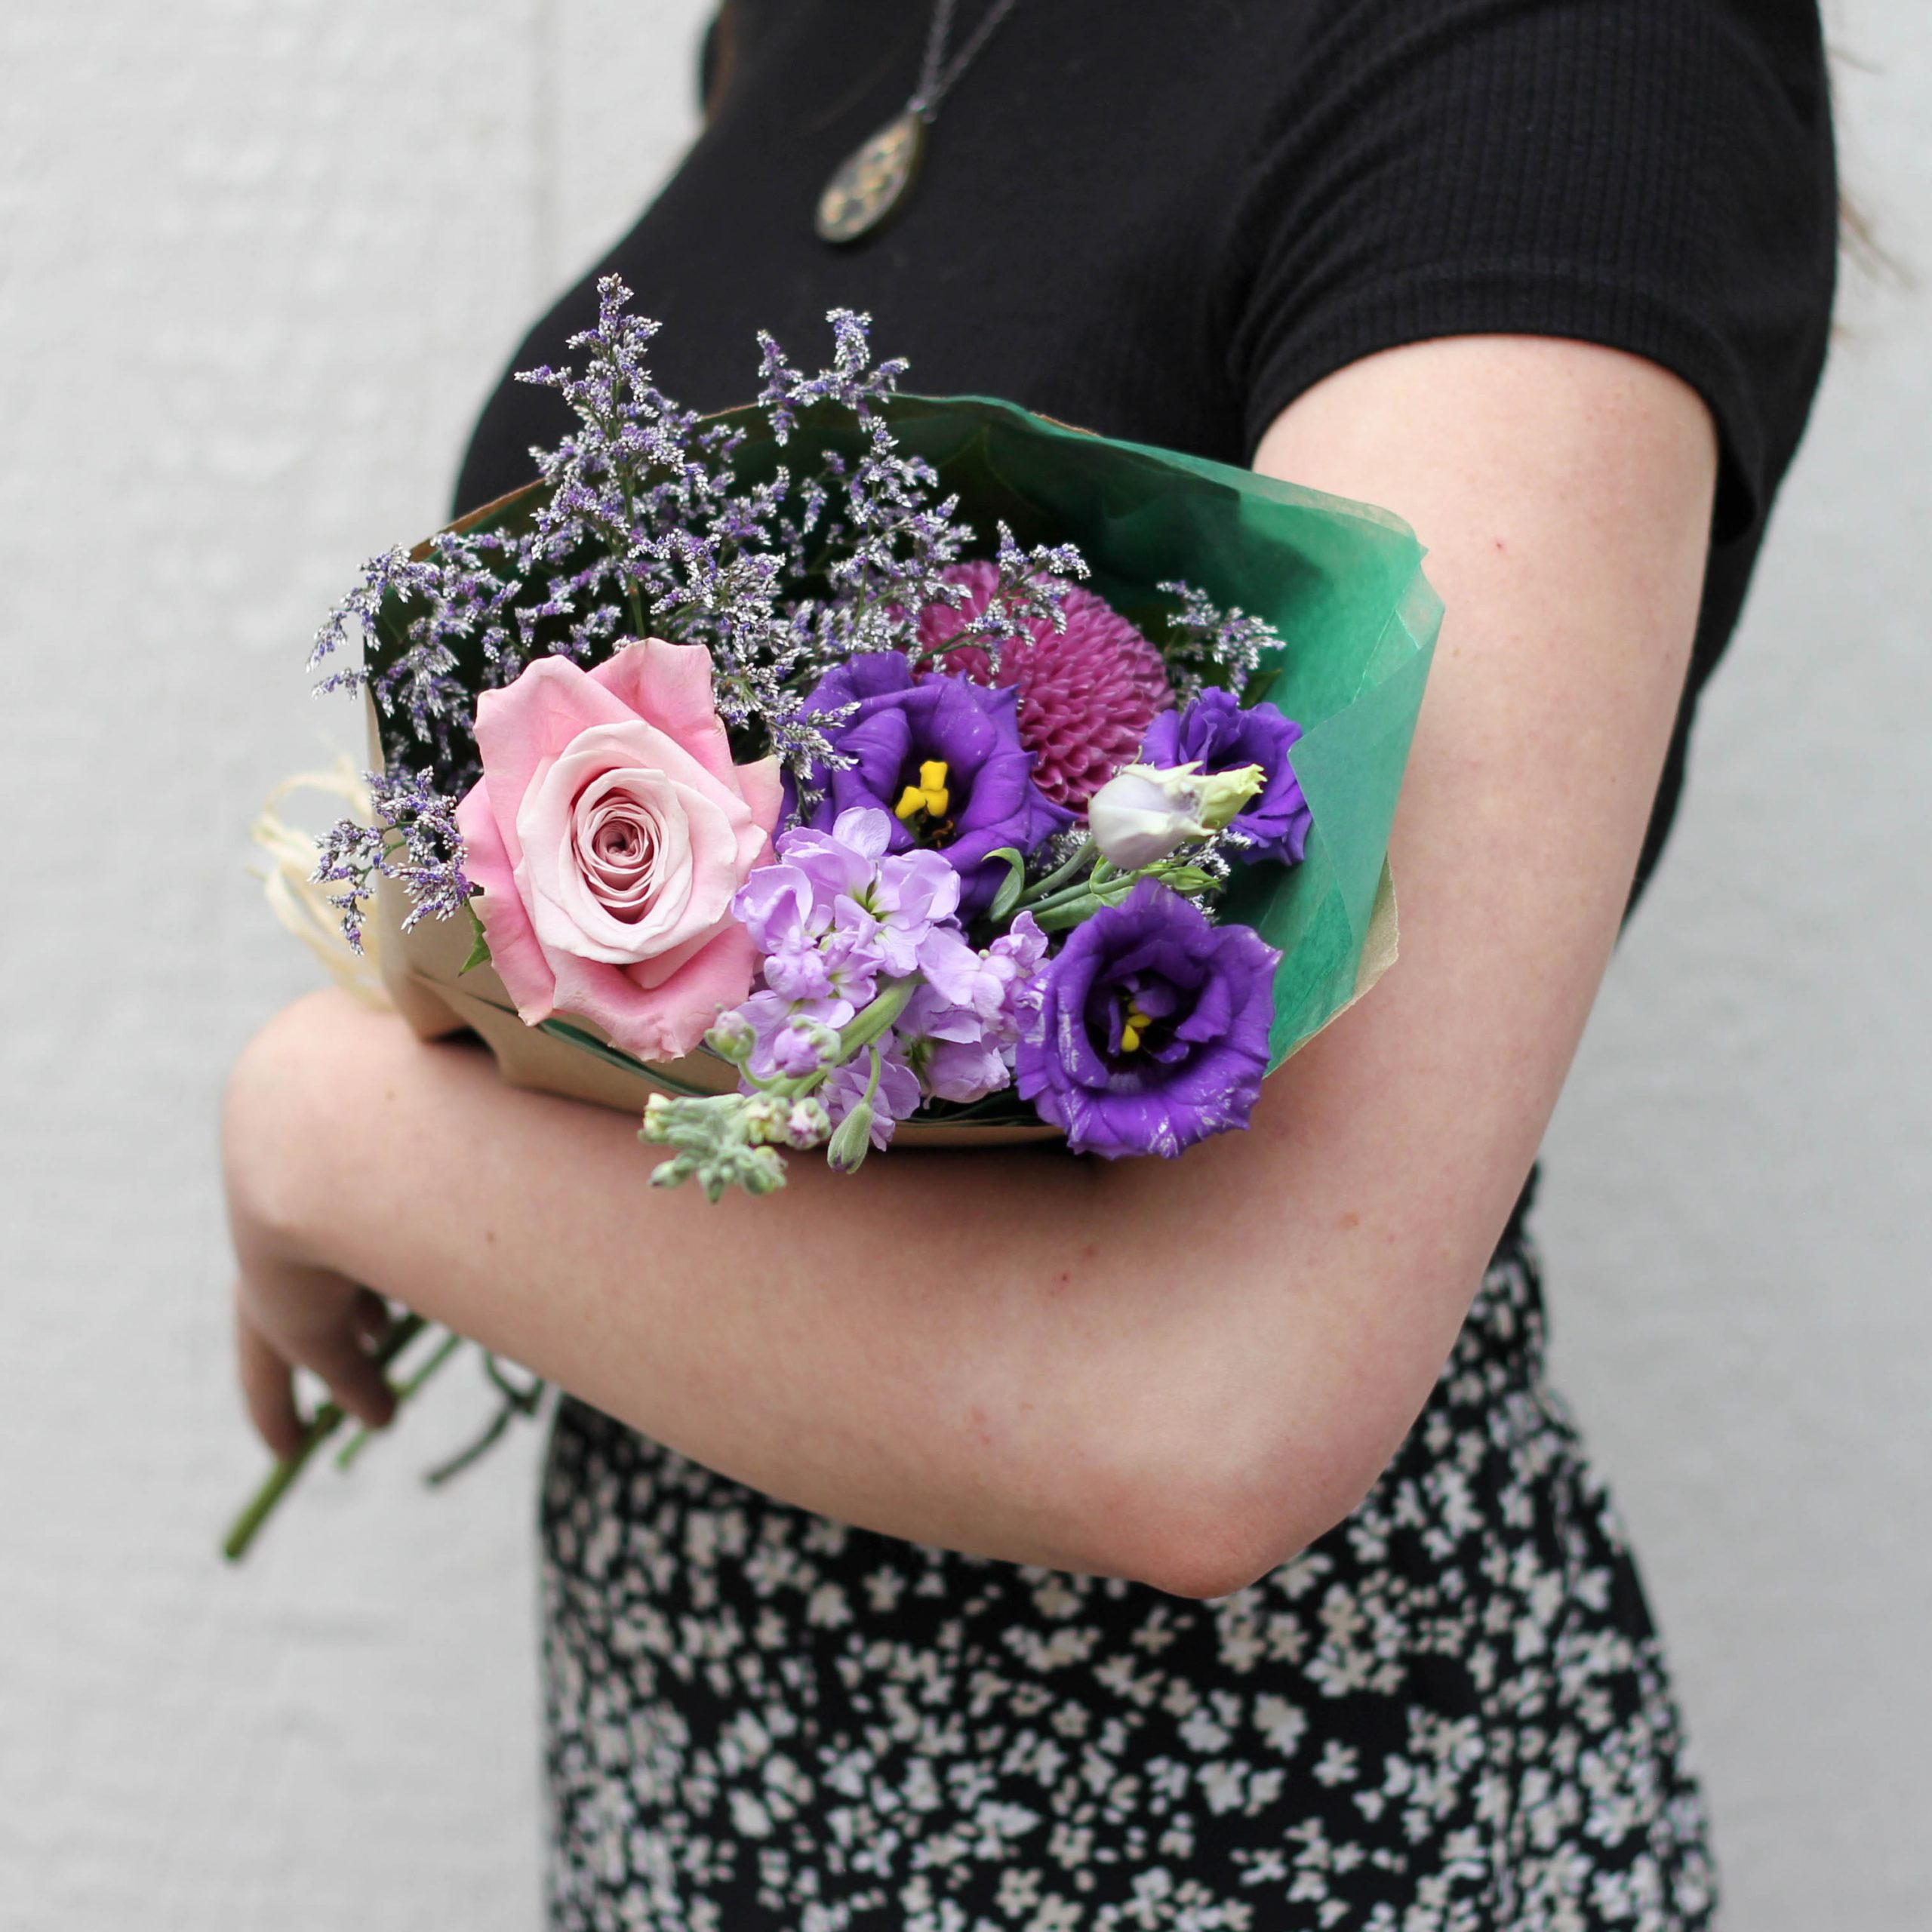 Daisy Bunch Floral Arrangement